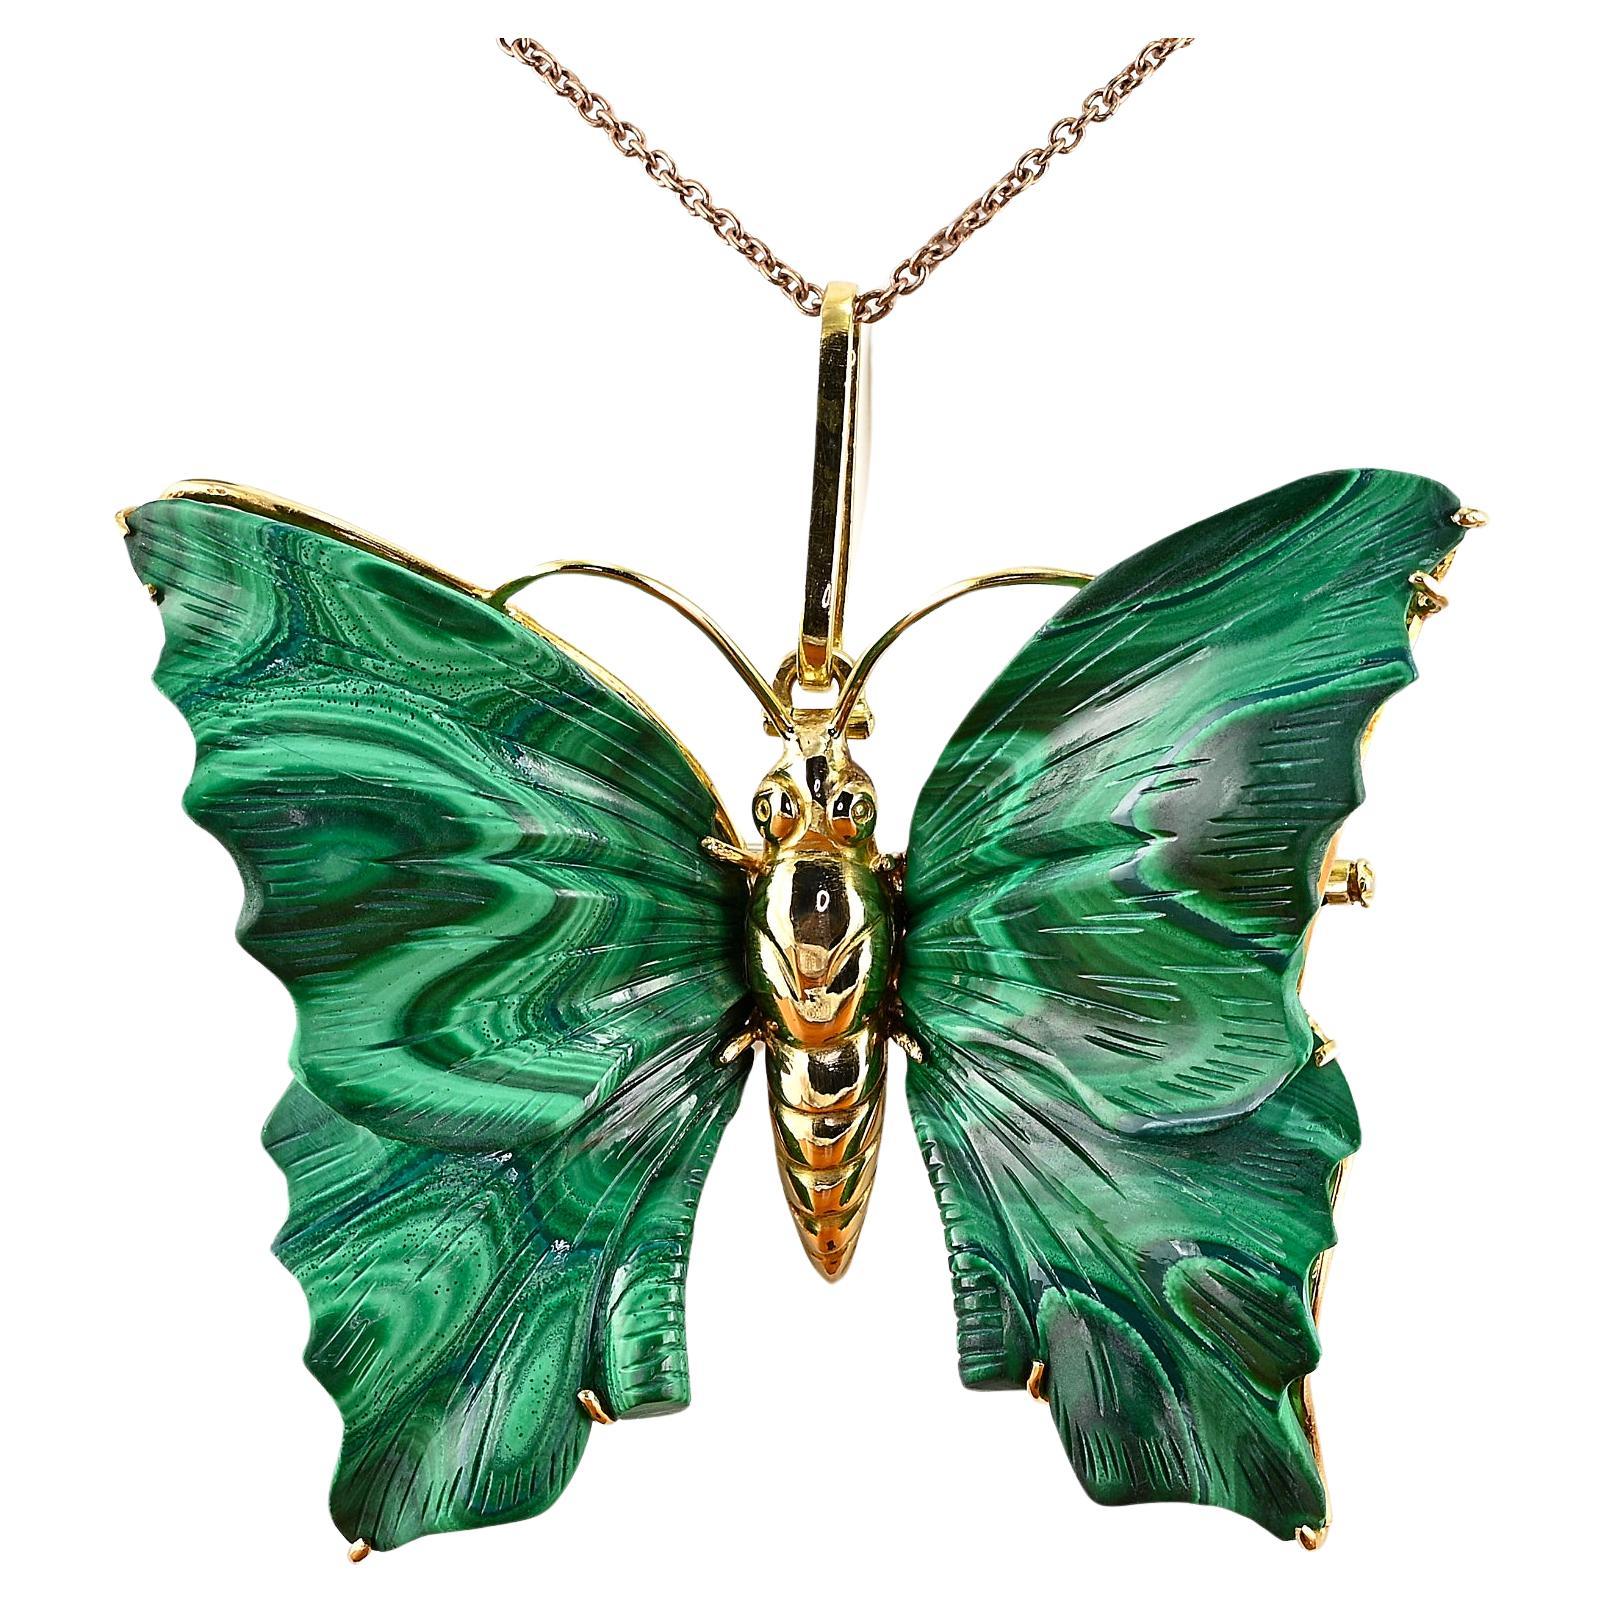 Vintage Malachite Carved Butterfly 18 KT Brooch Pendant